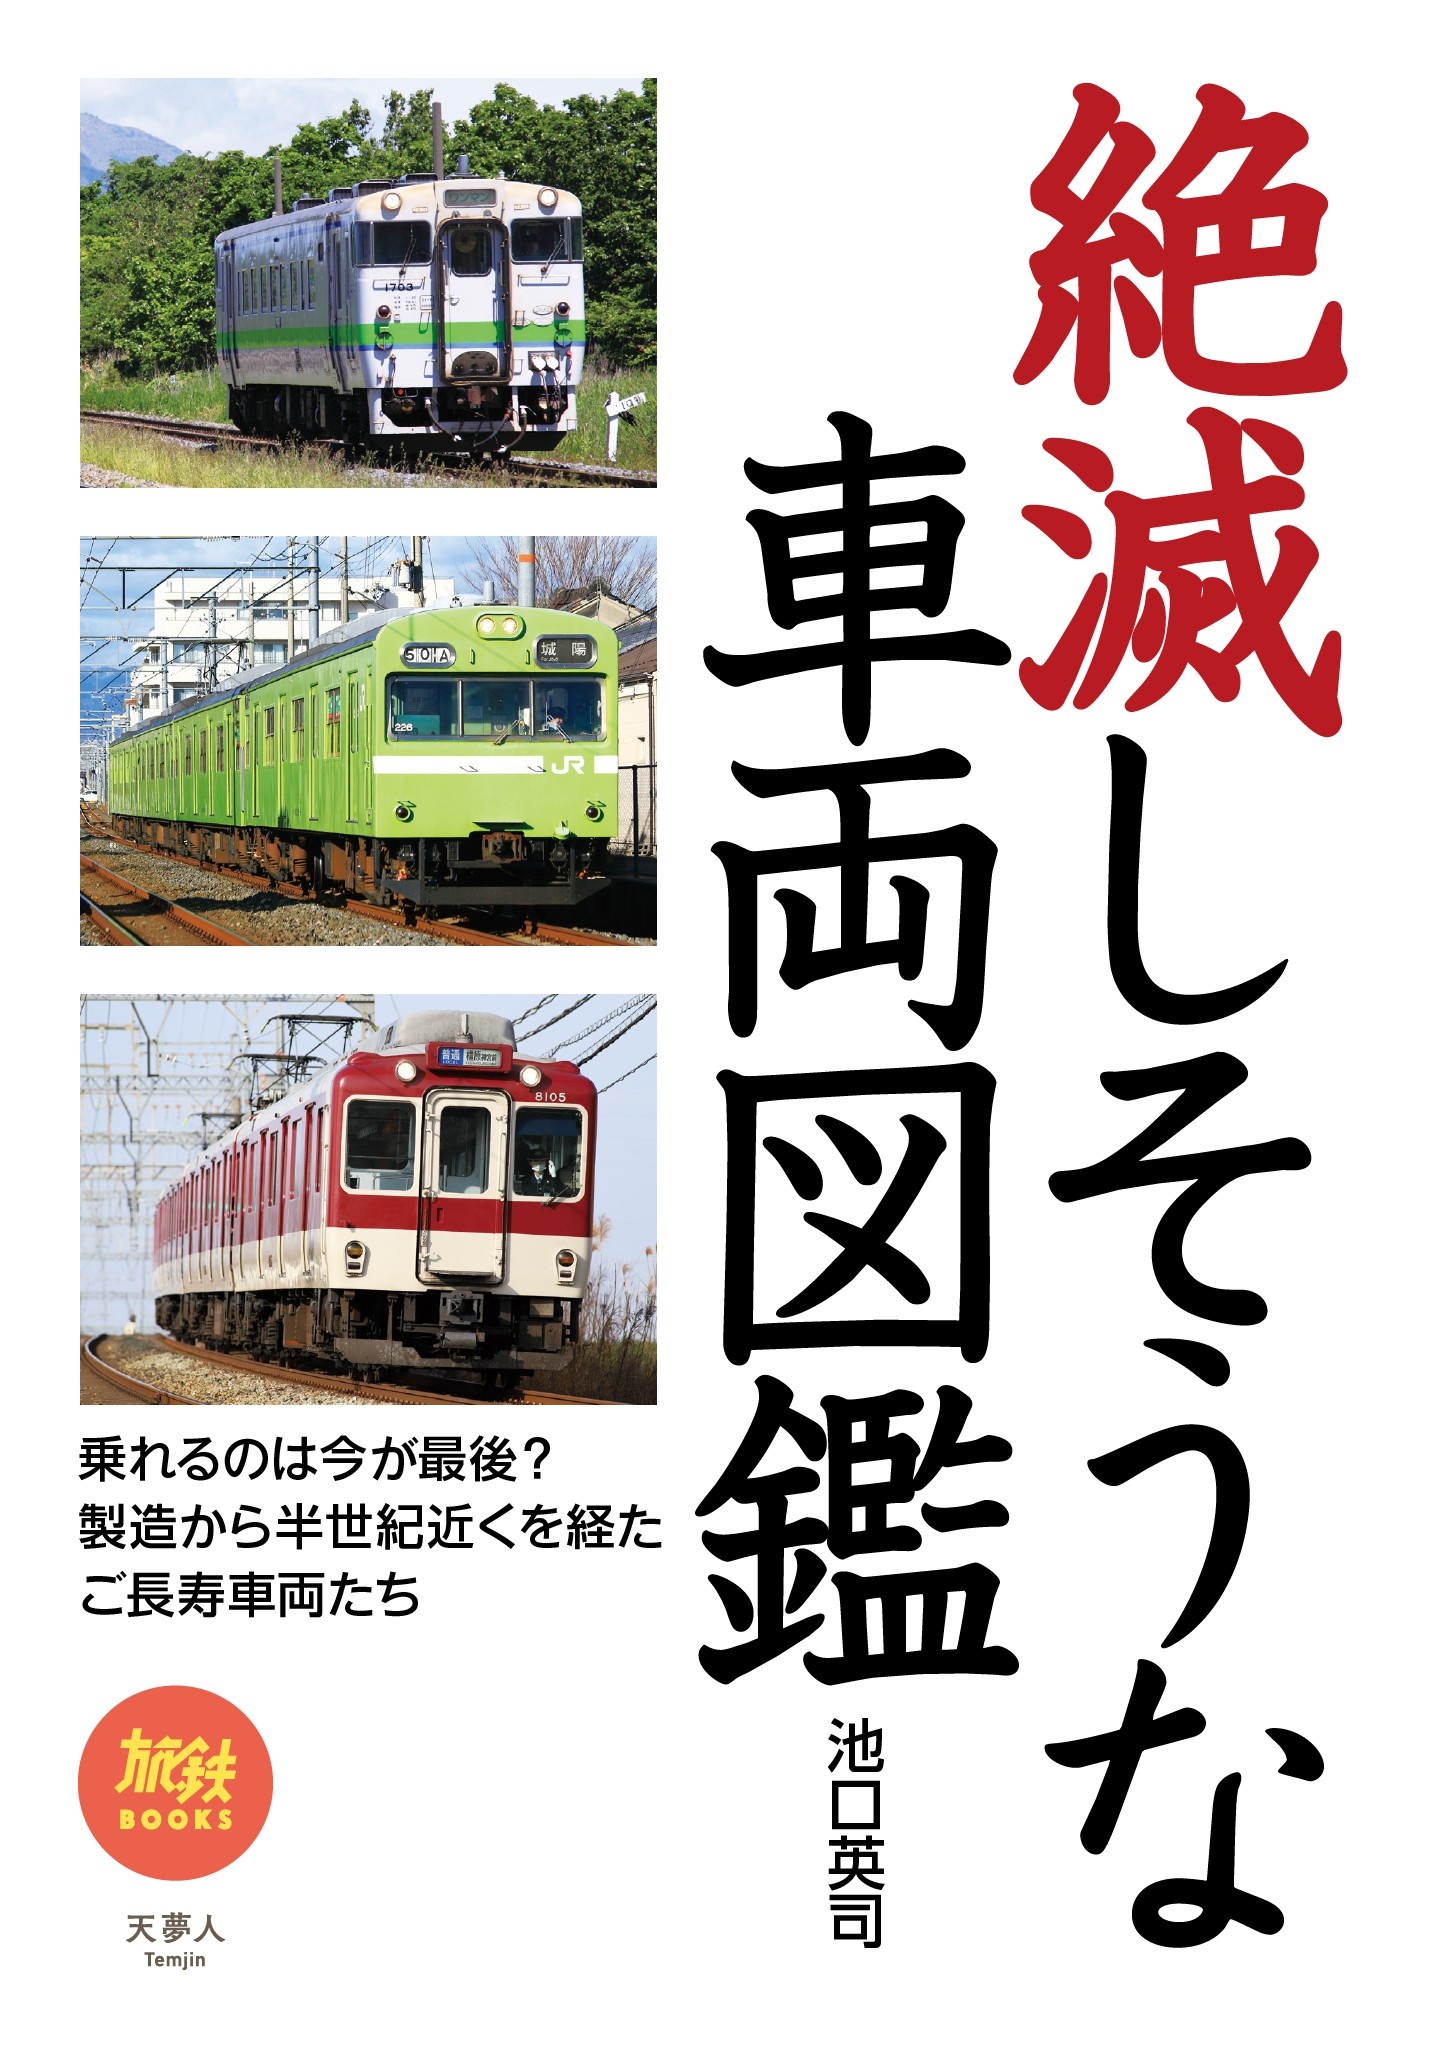 鉄道旅と鉄道 vol.47-54